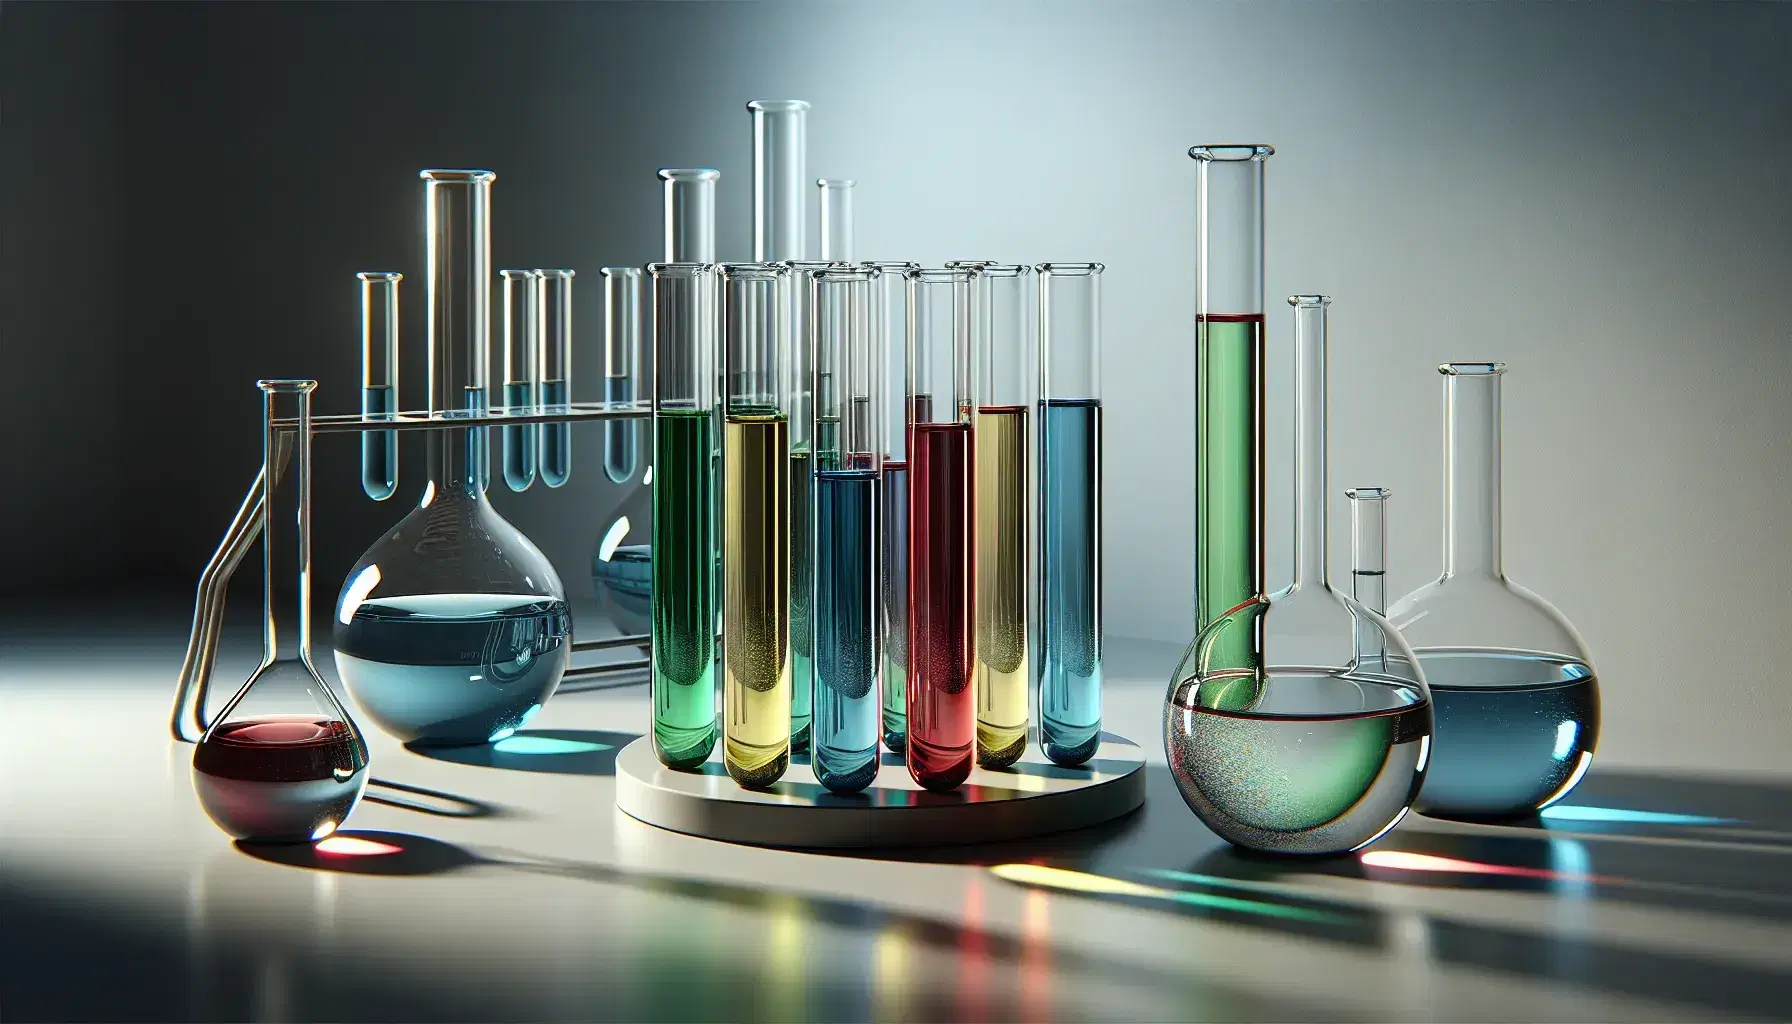 Tubos de ensayo de vidrio con líquidos de colores azul, verde, amarillo y rojo en fila sobre superficie blanca, con soporte metálico detrás y parte de un matraz Erlenmeyer transparente a la derecha.